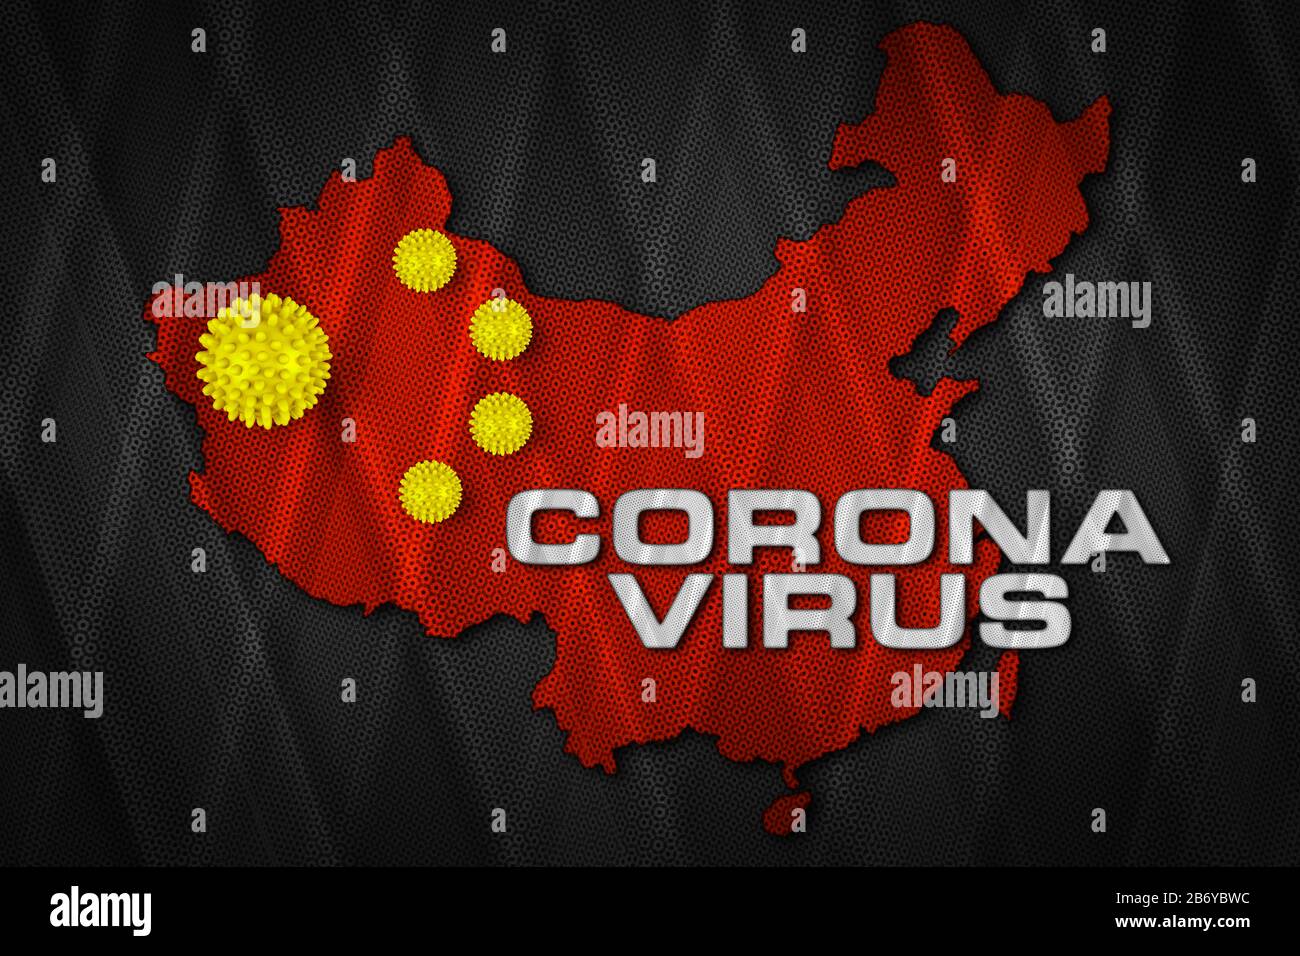 Weißer Corona-Virus-Schriftzug mit gelbem Corona-Virus auf rotem chinesischen Kartenfahne chinesischer Hintergrund. Cornavirus COVID-19 Epidemie bei globalen Ausbrüchen Stockfoto